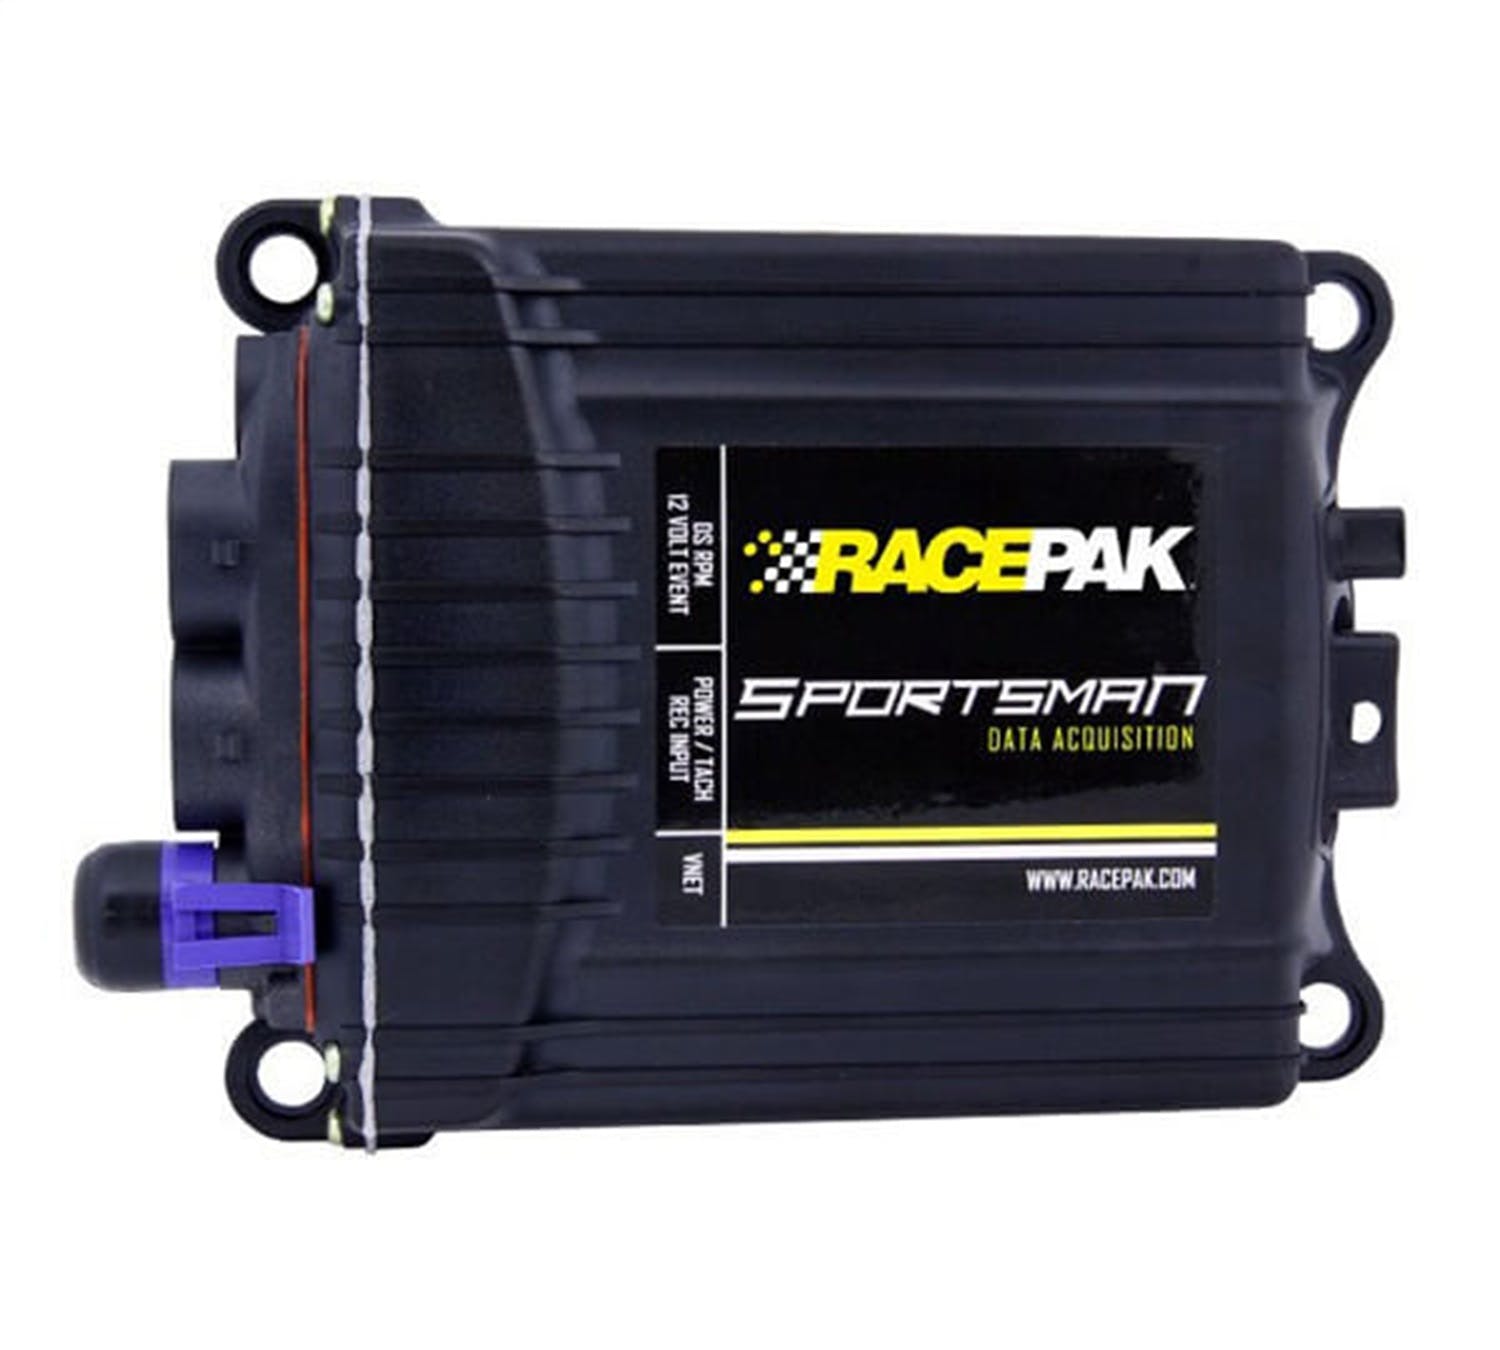 Racepak 610-UG-SPRT2 Sportsman Channel Upgrade